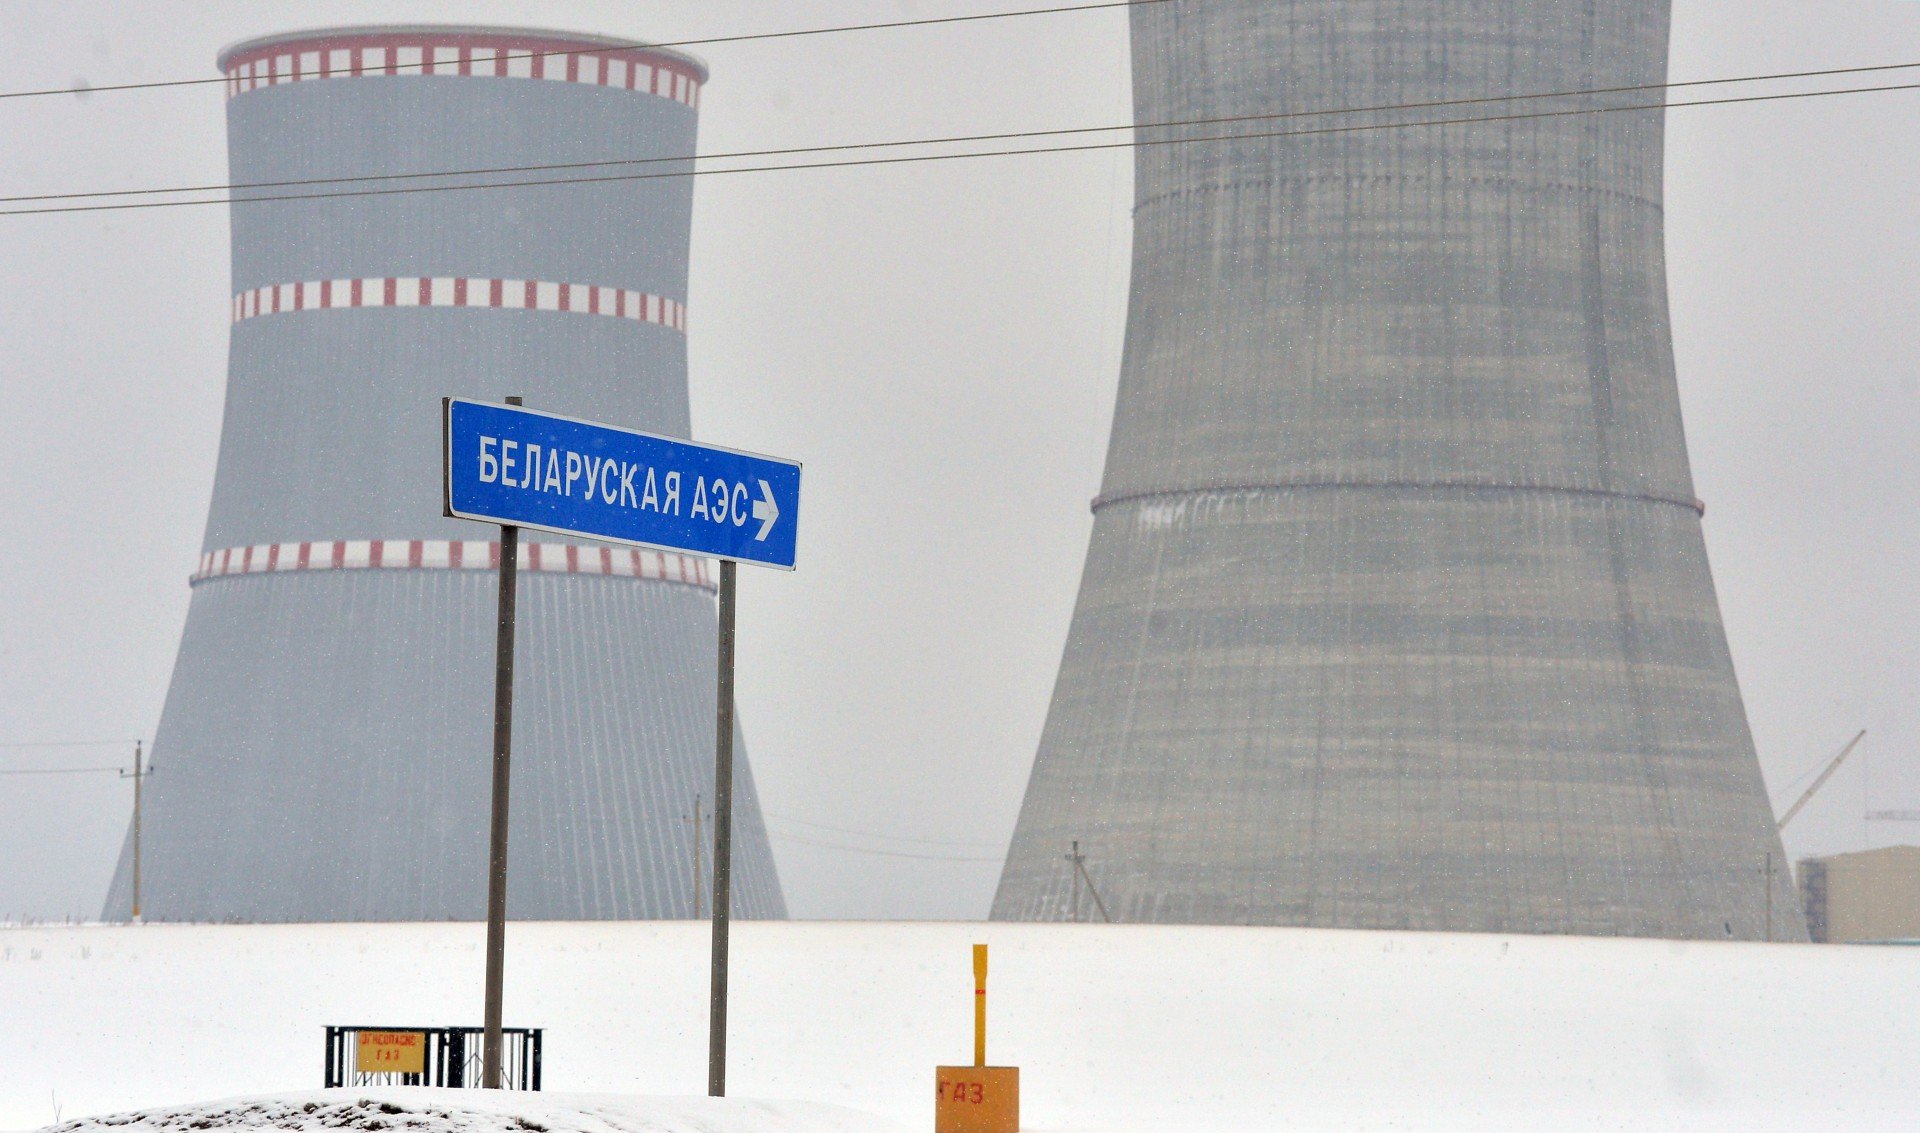 Строящаяся атомная электростанция в 18 километрах от города Островец Гродненской области, 2018 год. Фото: РИА Новости